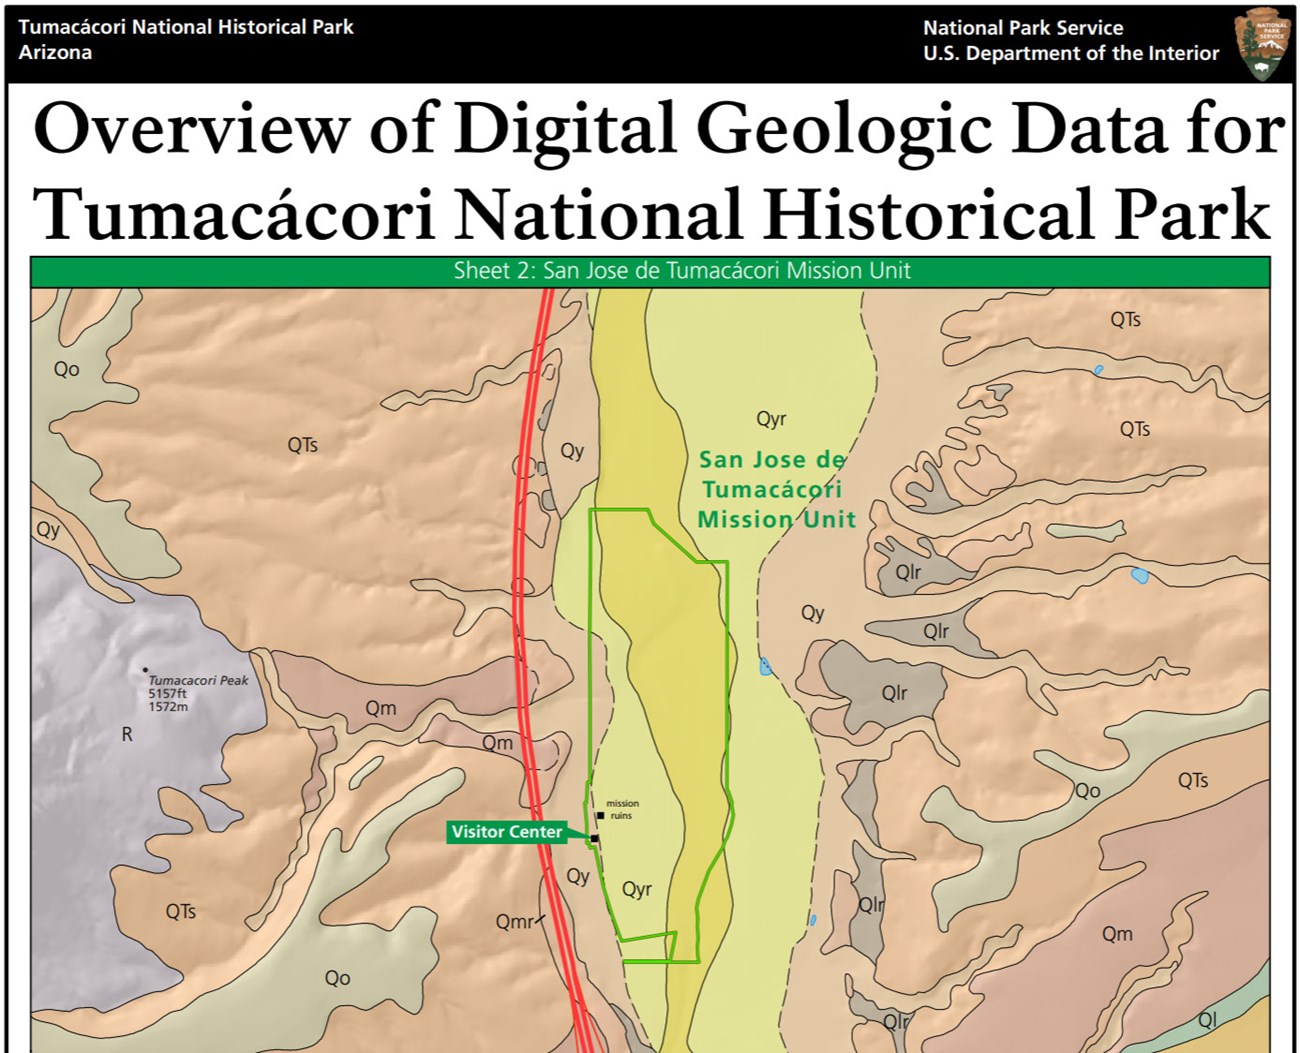 image of tumacacori gri geologic map